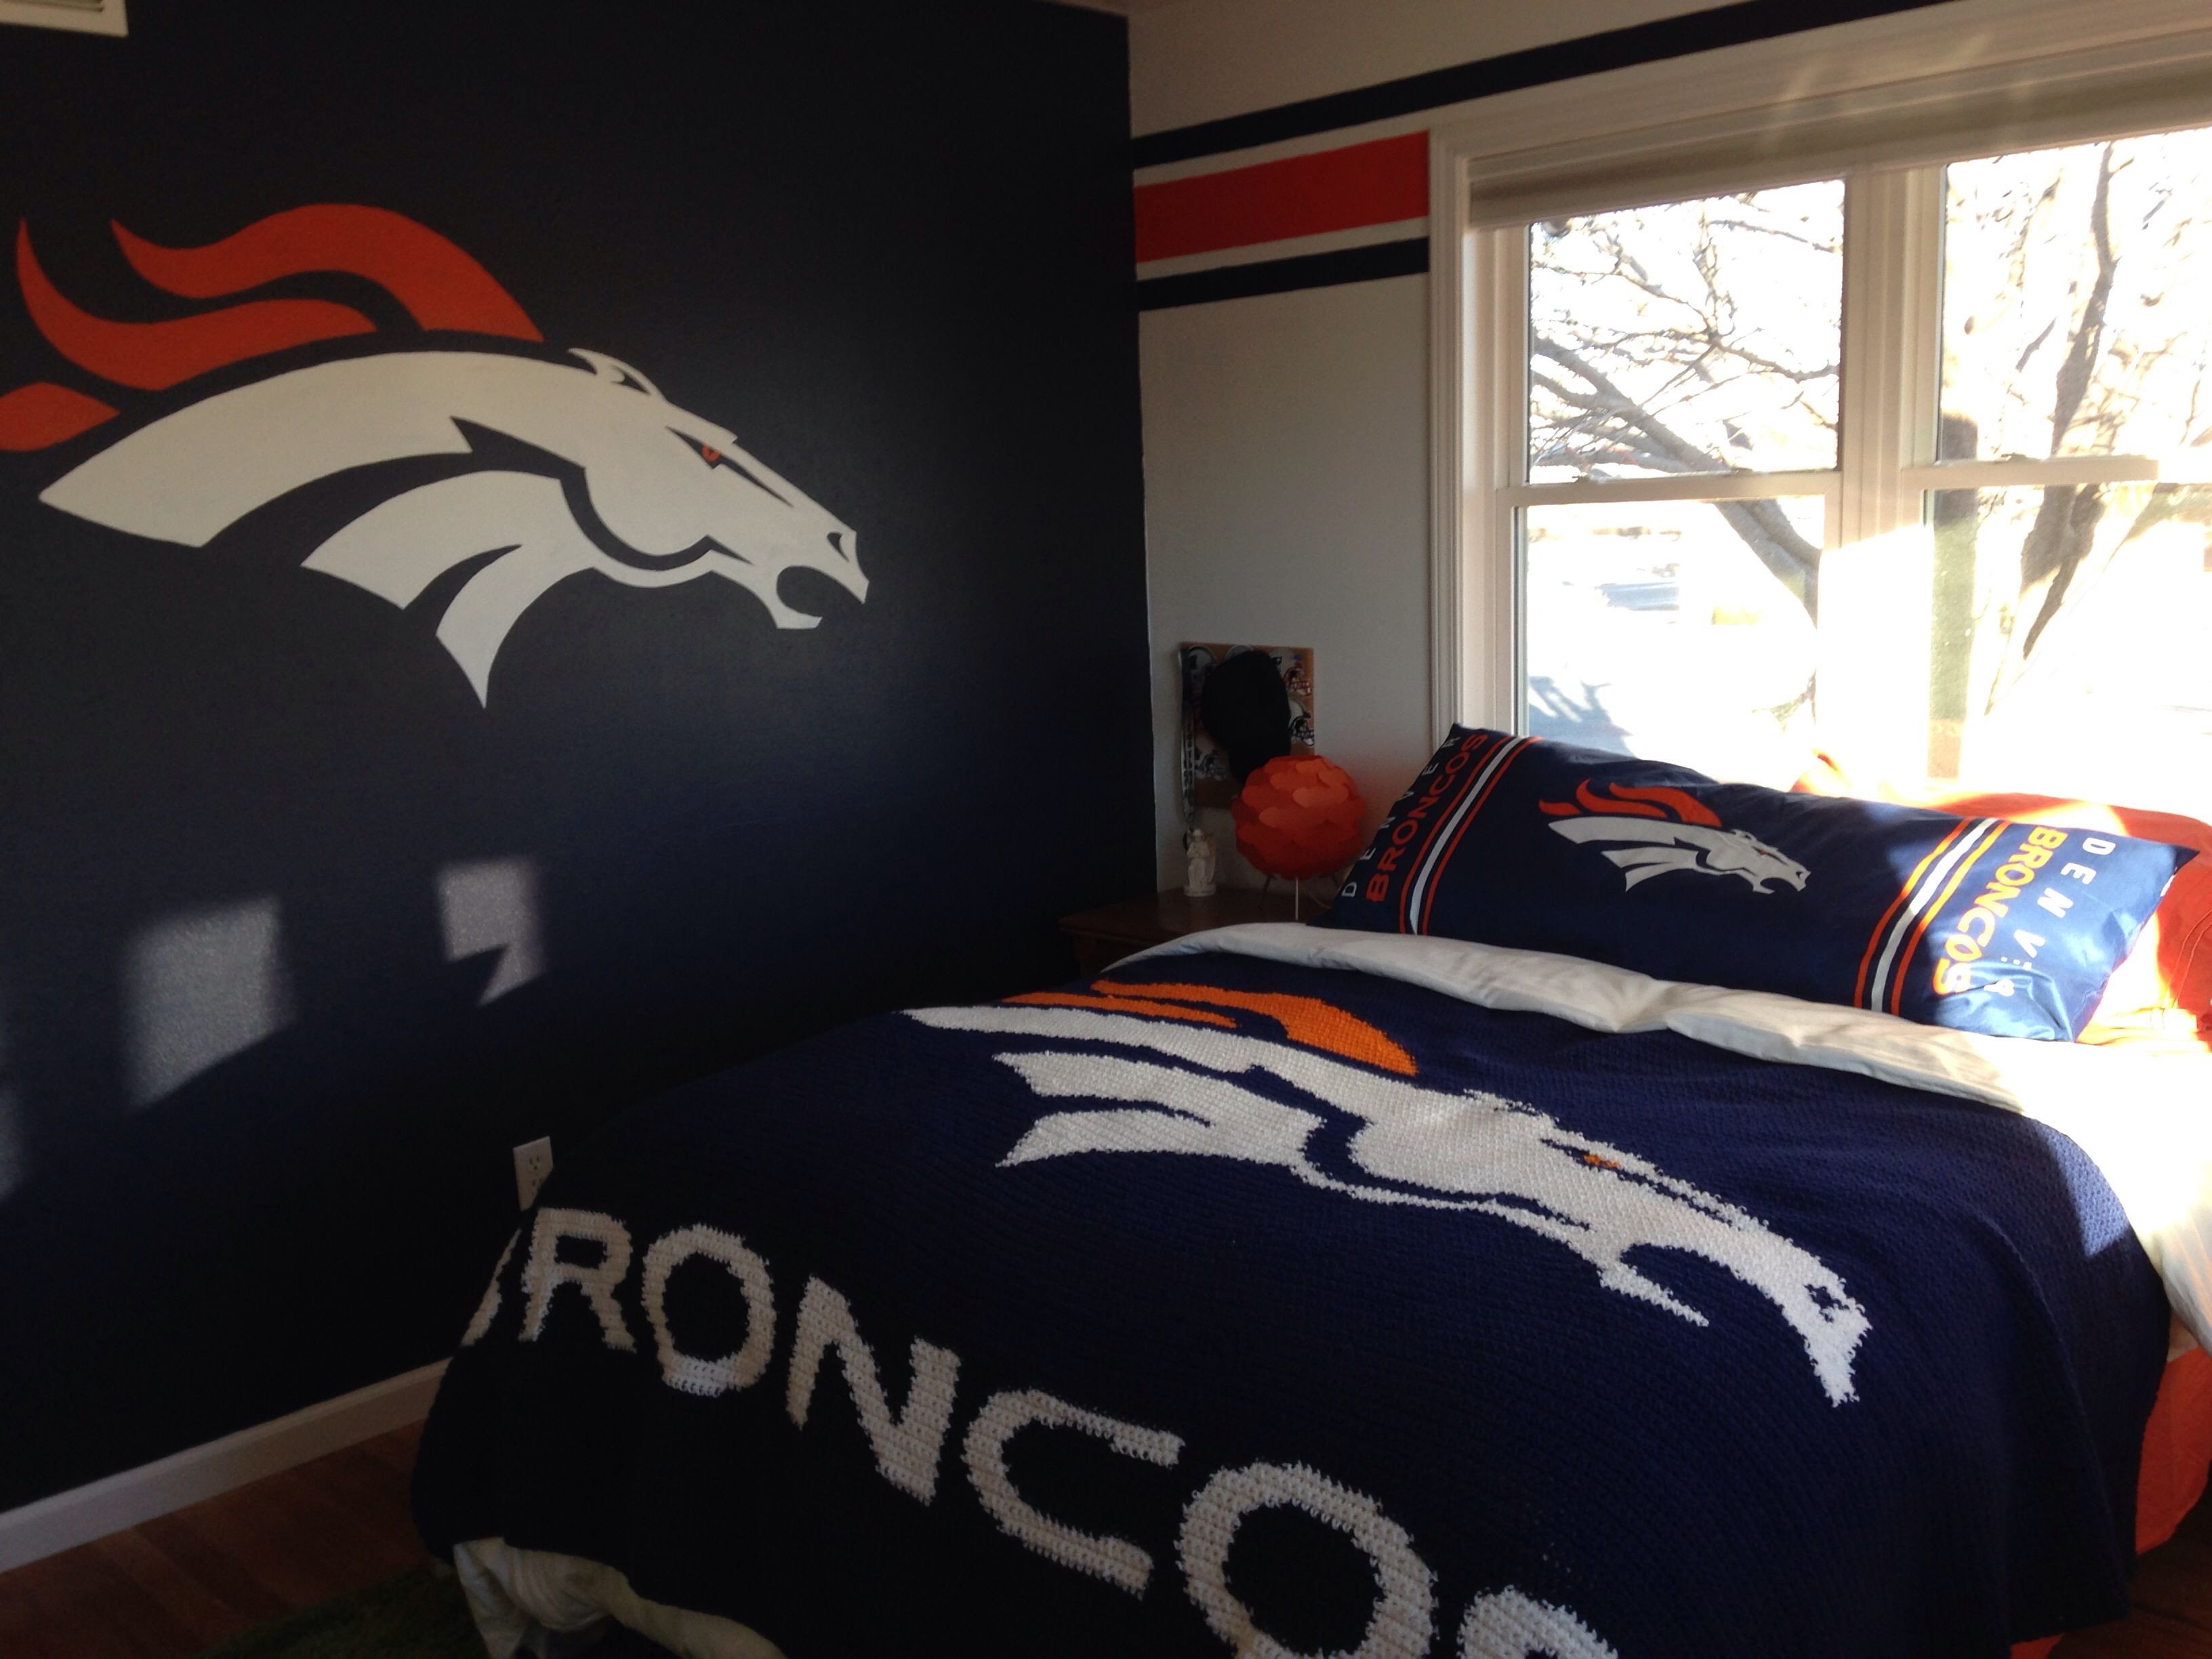 Denver Broncos Bedroom Set Fresh 60 Best Bronco Bedroom Images